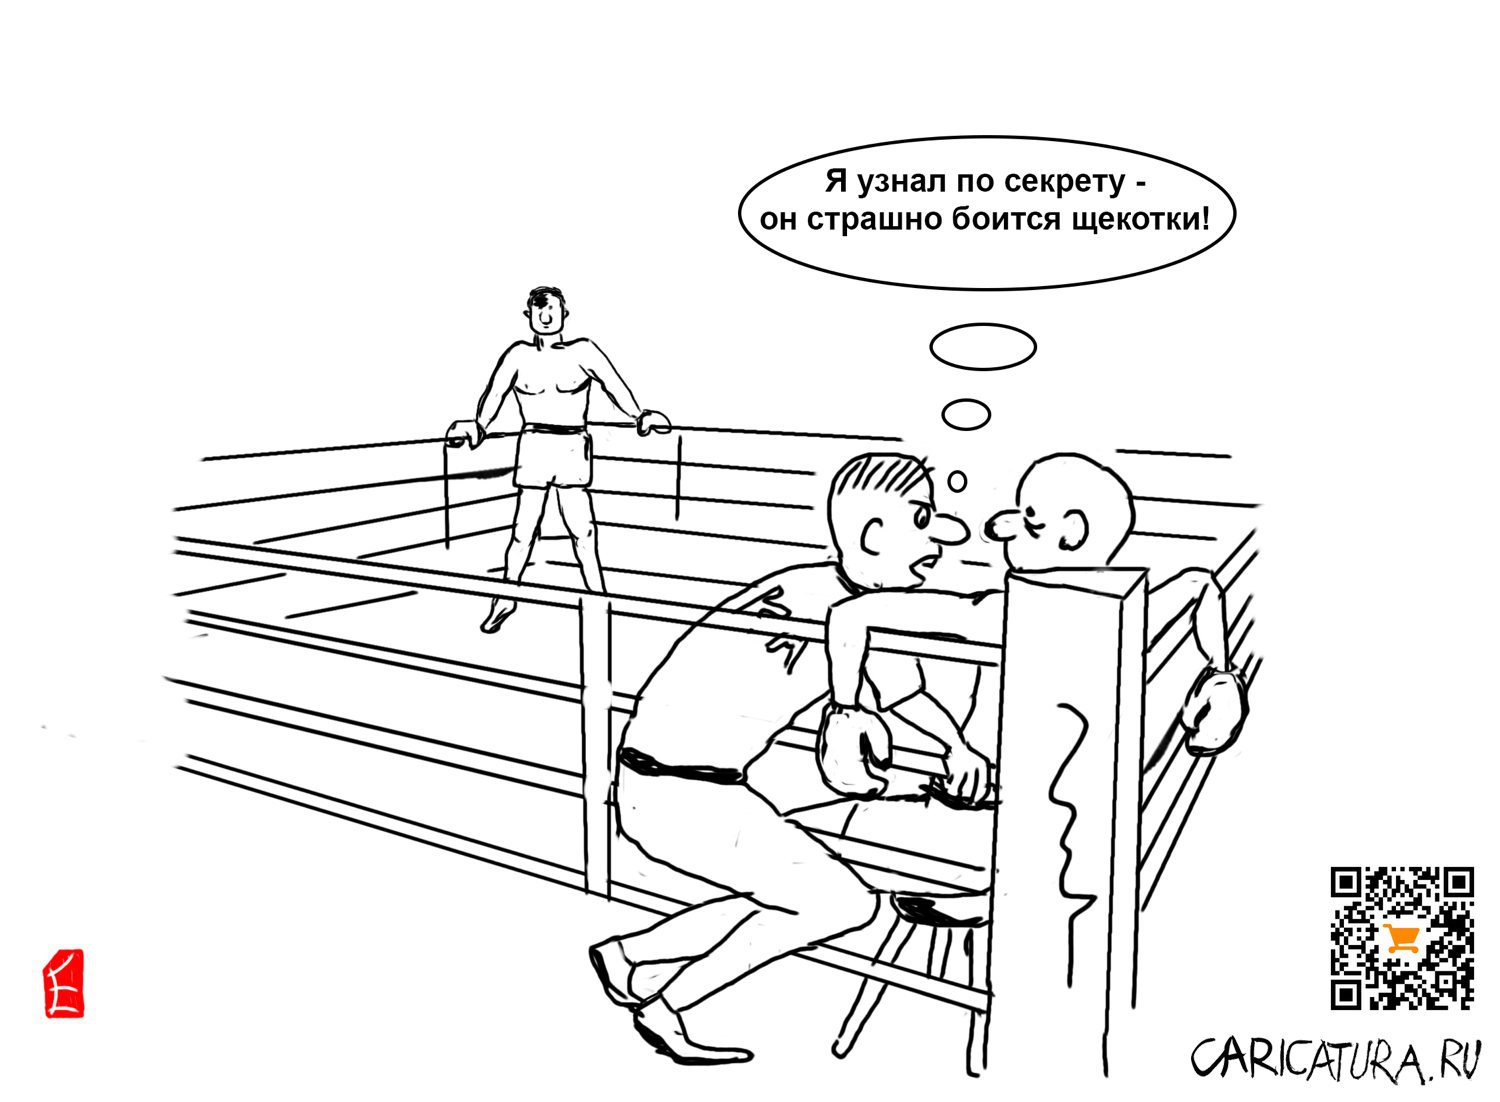 Карикатура "Ключ к победе", Евгений Лапин